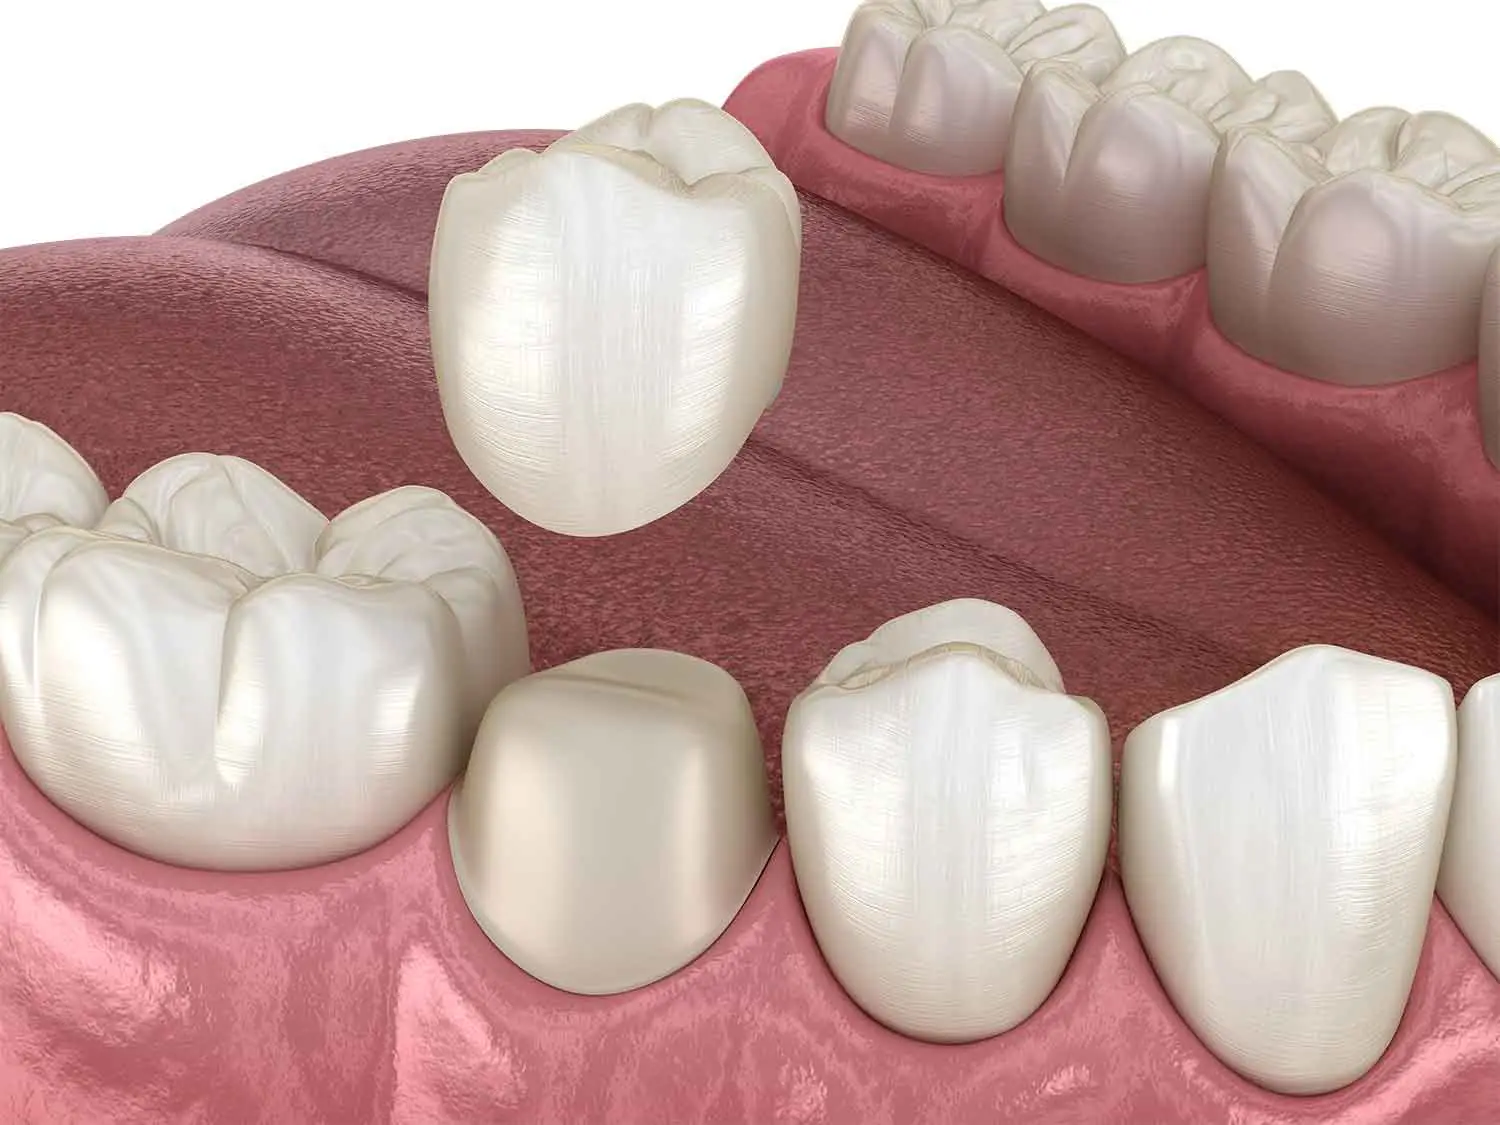 dental-crown-3d-illustration